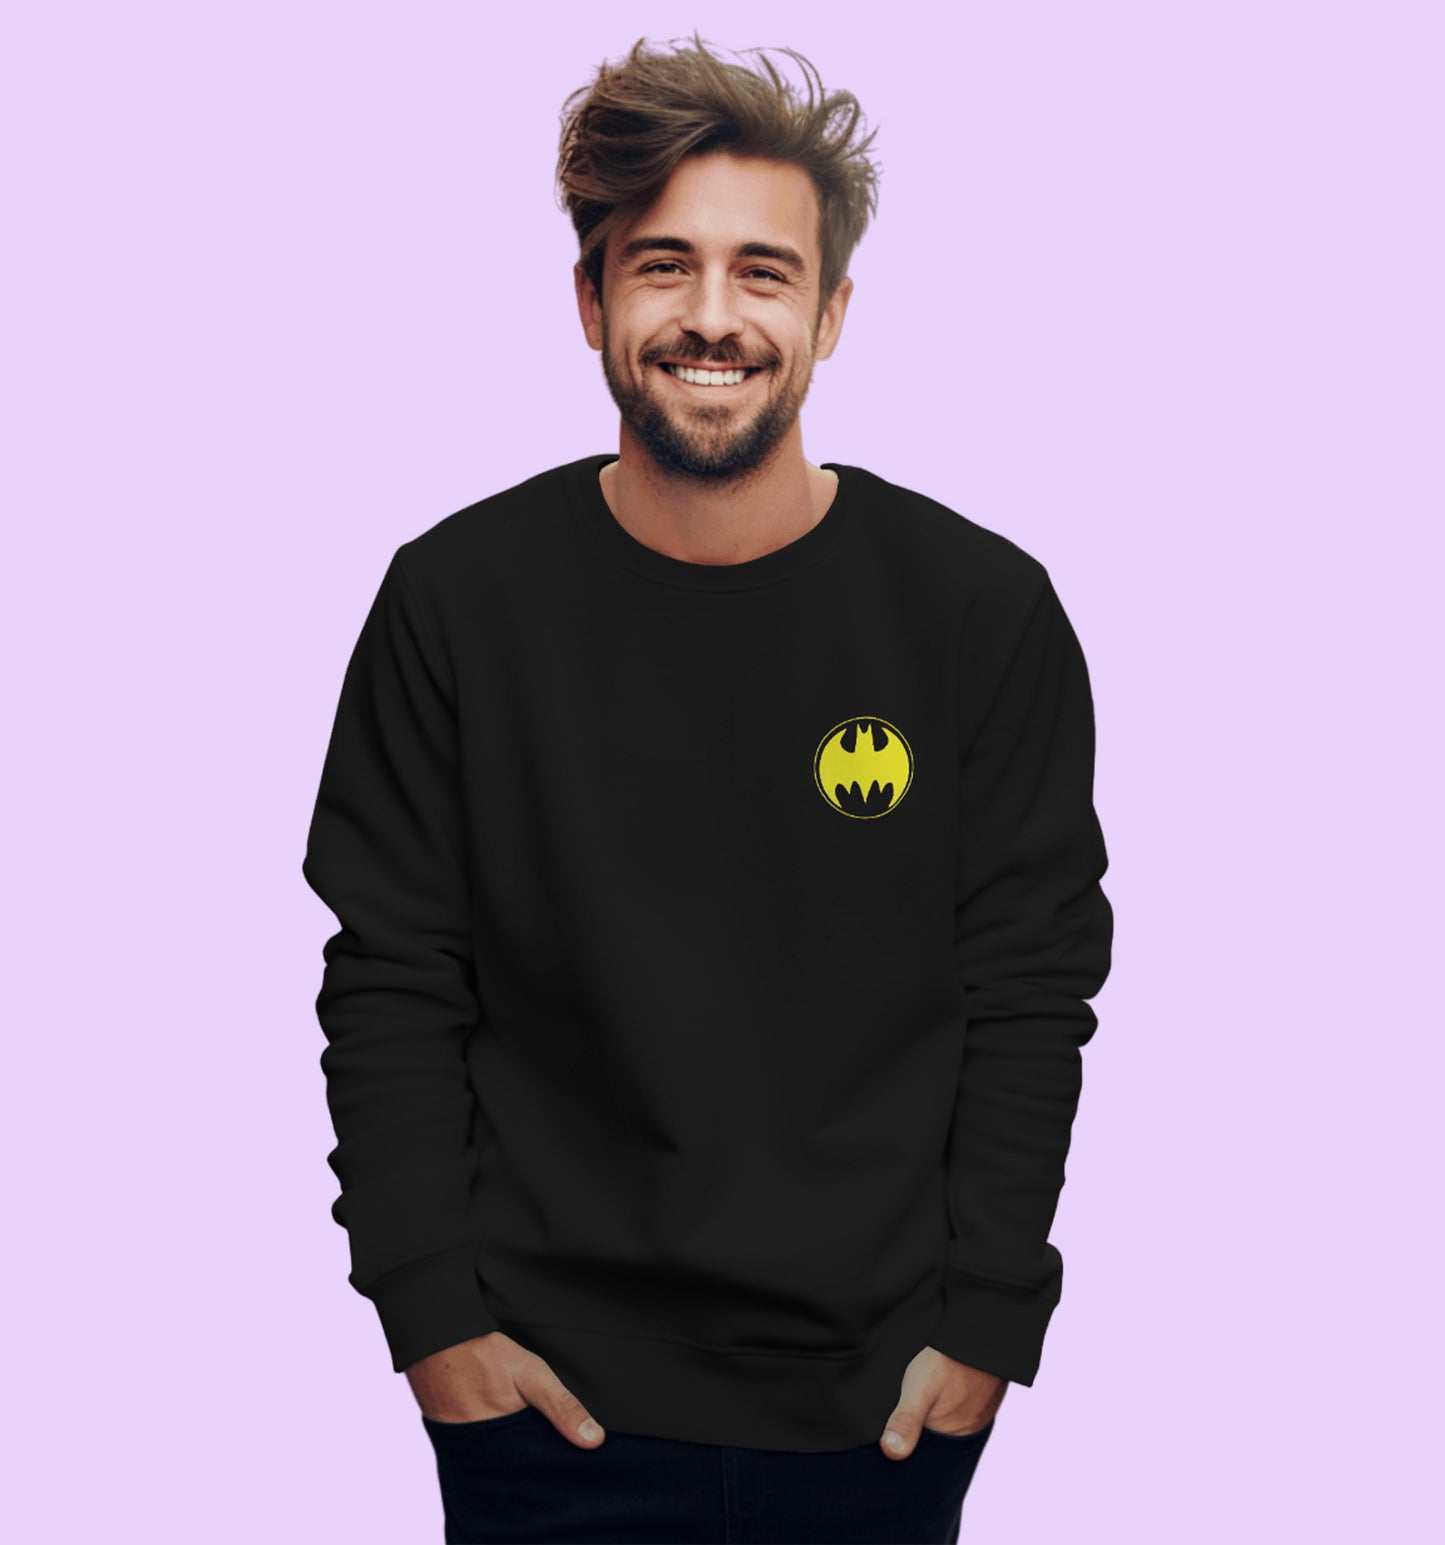 Dc - Batman - Justice And Aevenge Dc Sweatshirt In Black - Mon Zurich Originals